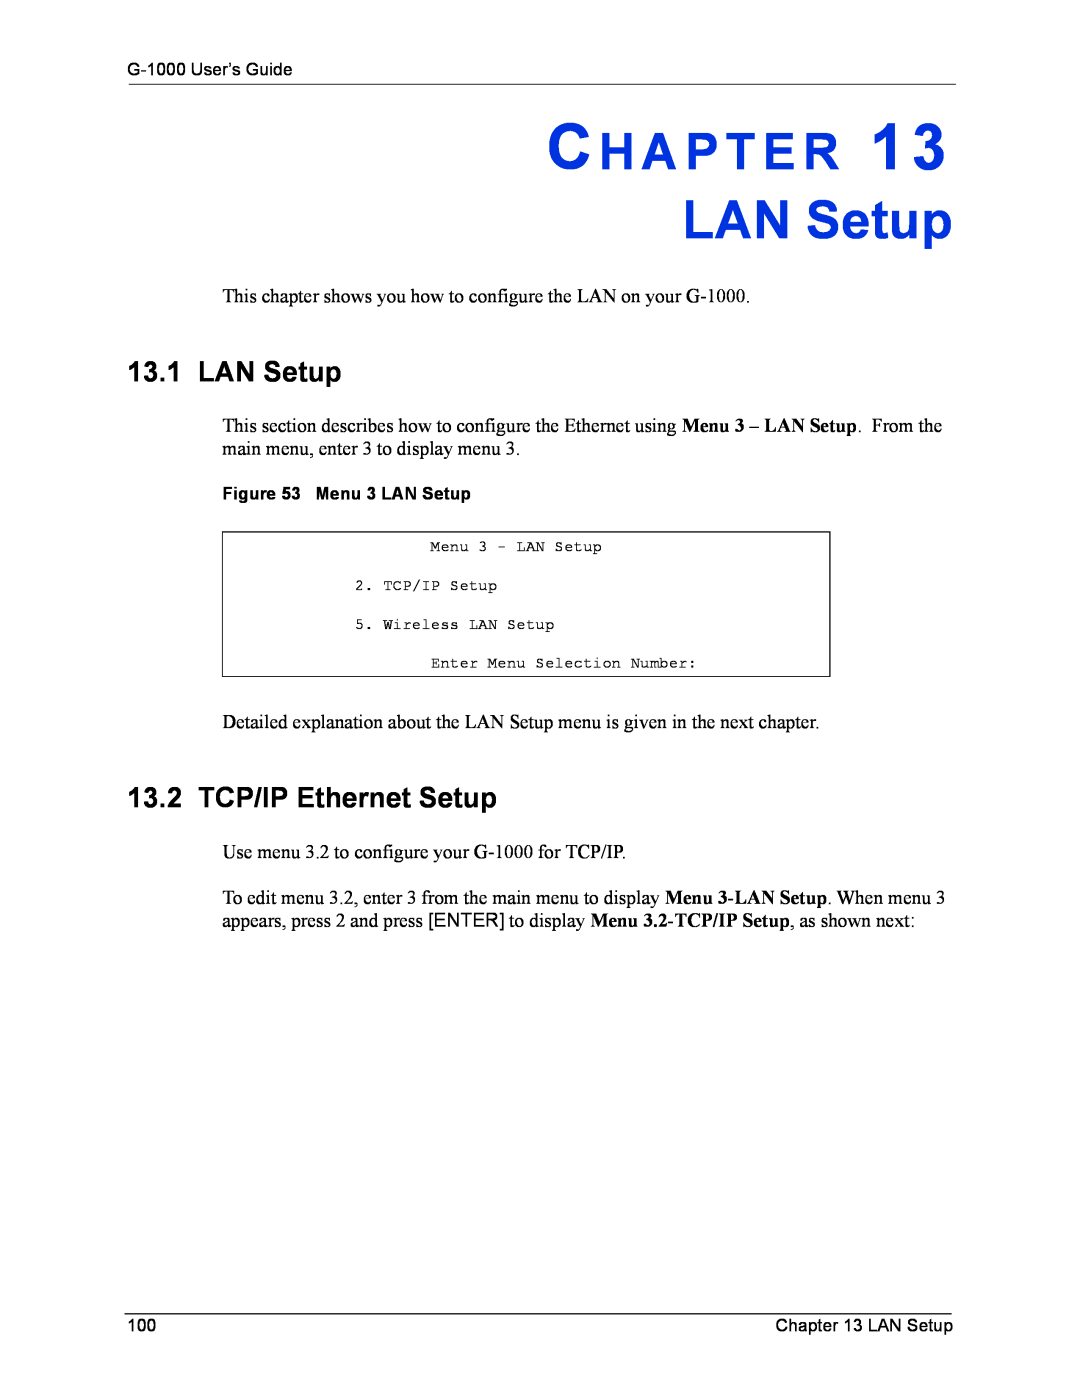 ZyXEL Communications G-1000 manual LAN Setup, 13.2 TCP/IP Ethernet Setup, Ch A P T E R 